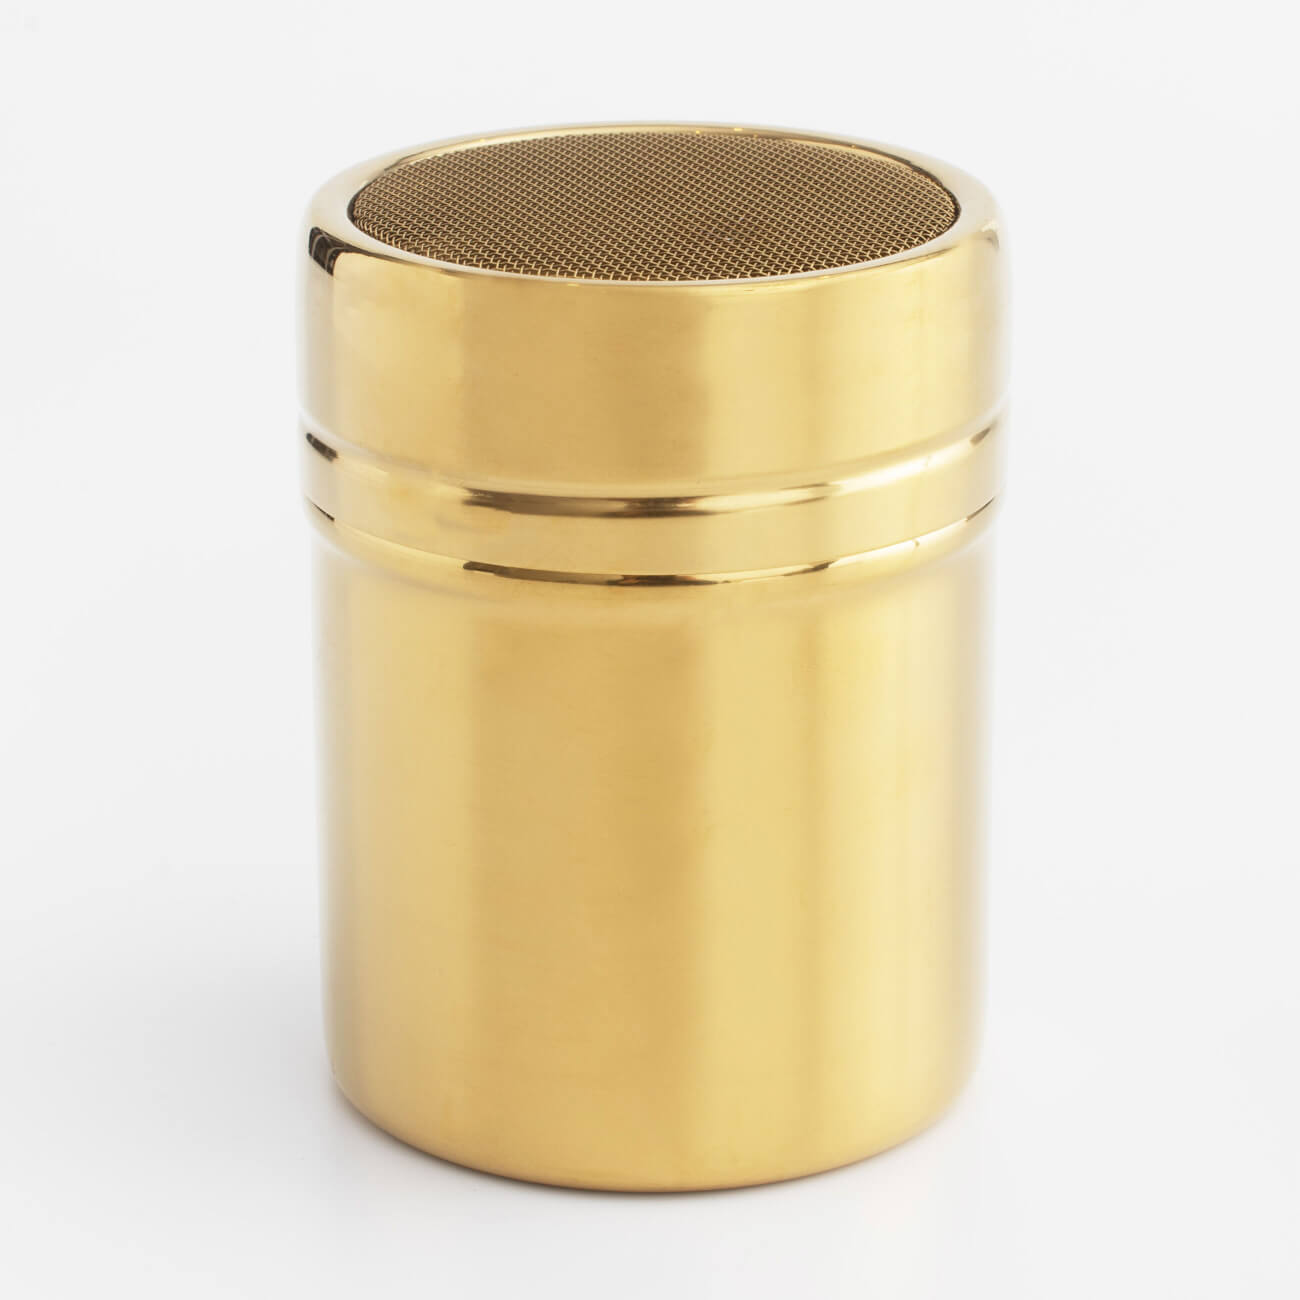 Сито-кружка, 9х7 см, с крышкой, сталь/пластик, золотистое, Classic gold изображение № 1